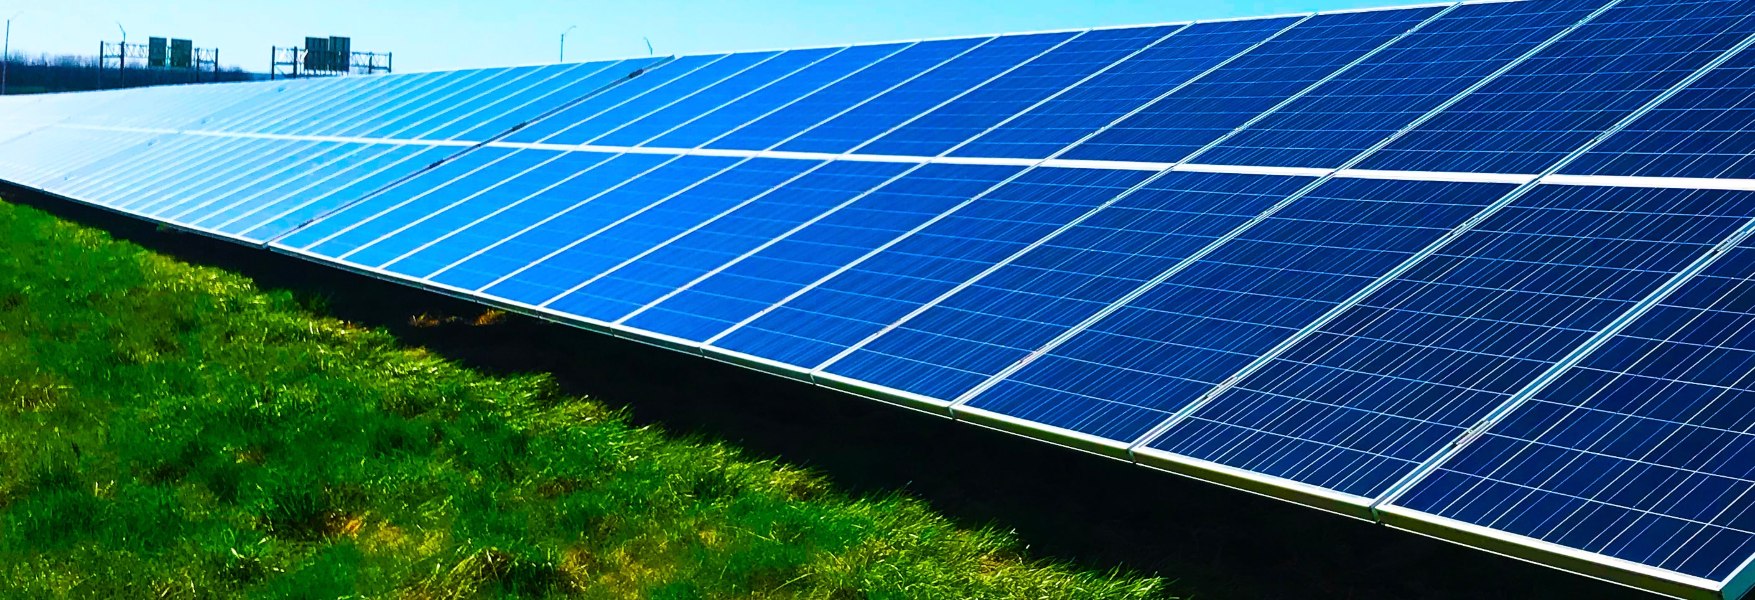 Duplicar Príncipe salado Energía solar fotovoltaica: 4 tecnologías para revolucionarla | OpenMind